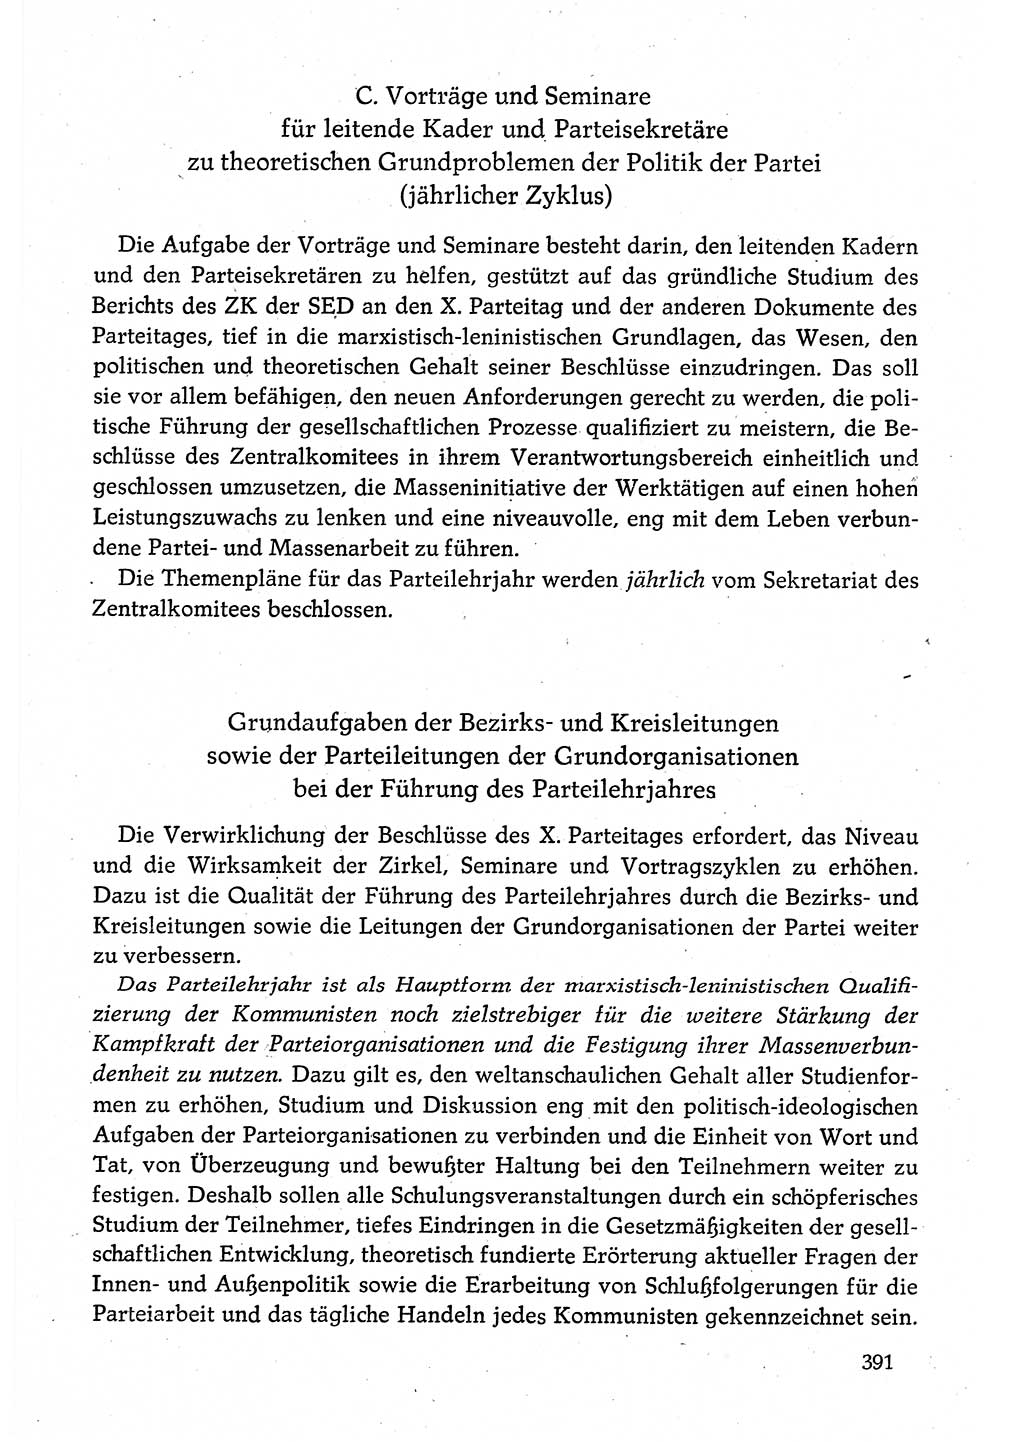 Dokumente der Sozialistischen Einheitspartei Deutschlands (SED) [Deutsche Demokratische Republik (DDR)] 1980-1981, Seite 391 (Dok. SED DDR 1980-1981, S. 391)